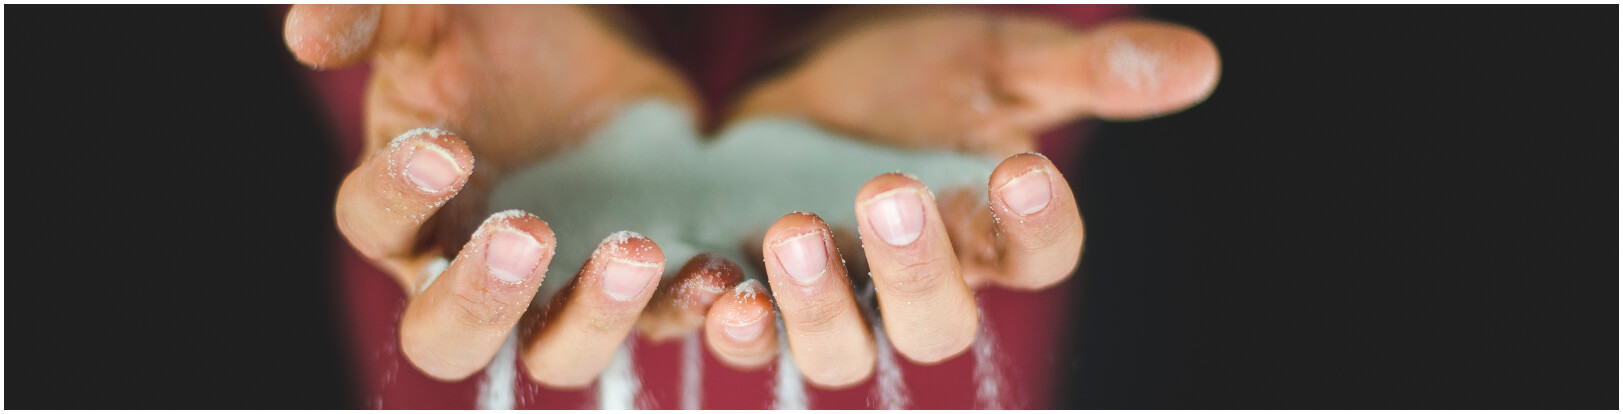 Ruwe handen als gevolg van een droge huid